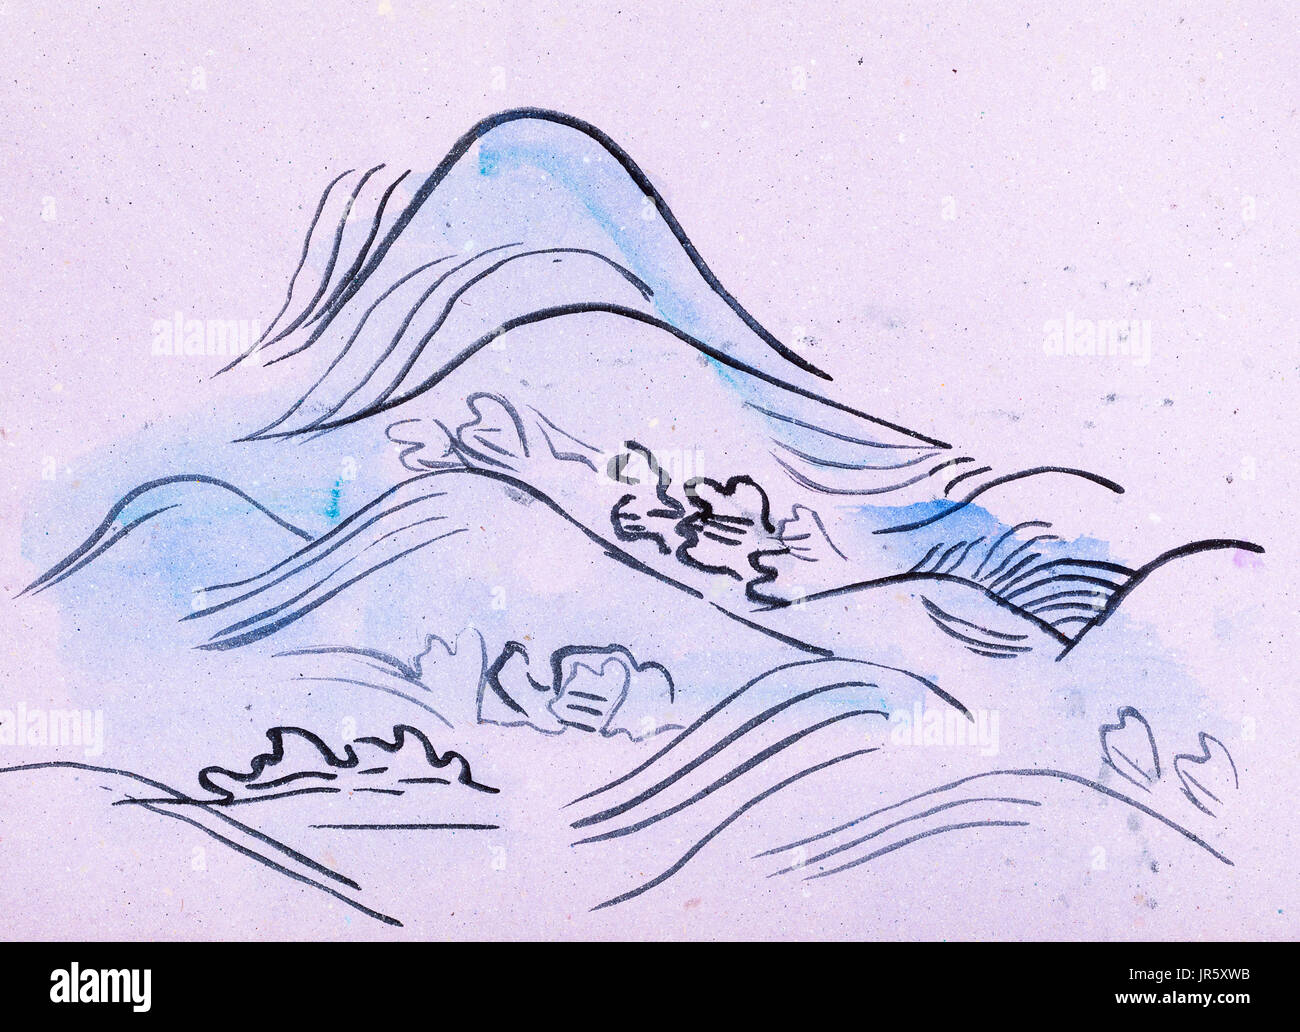 La formation en dessin suibokuga with style - vagues bleues sur du papier de couleur rose Banque D'Images